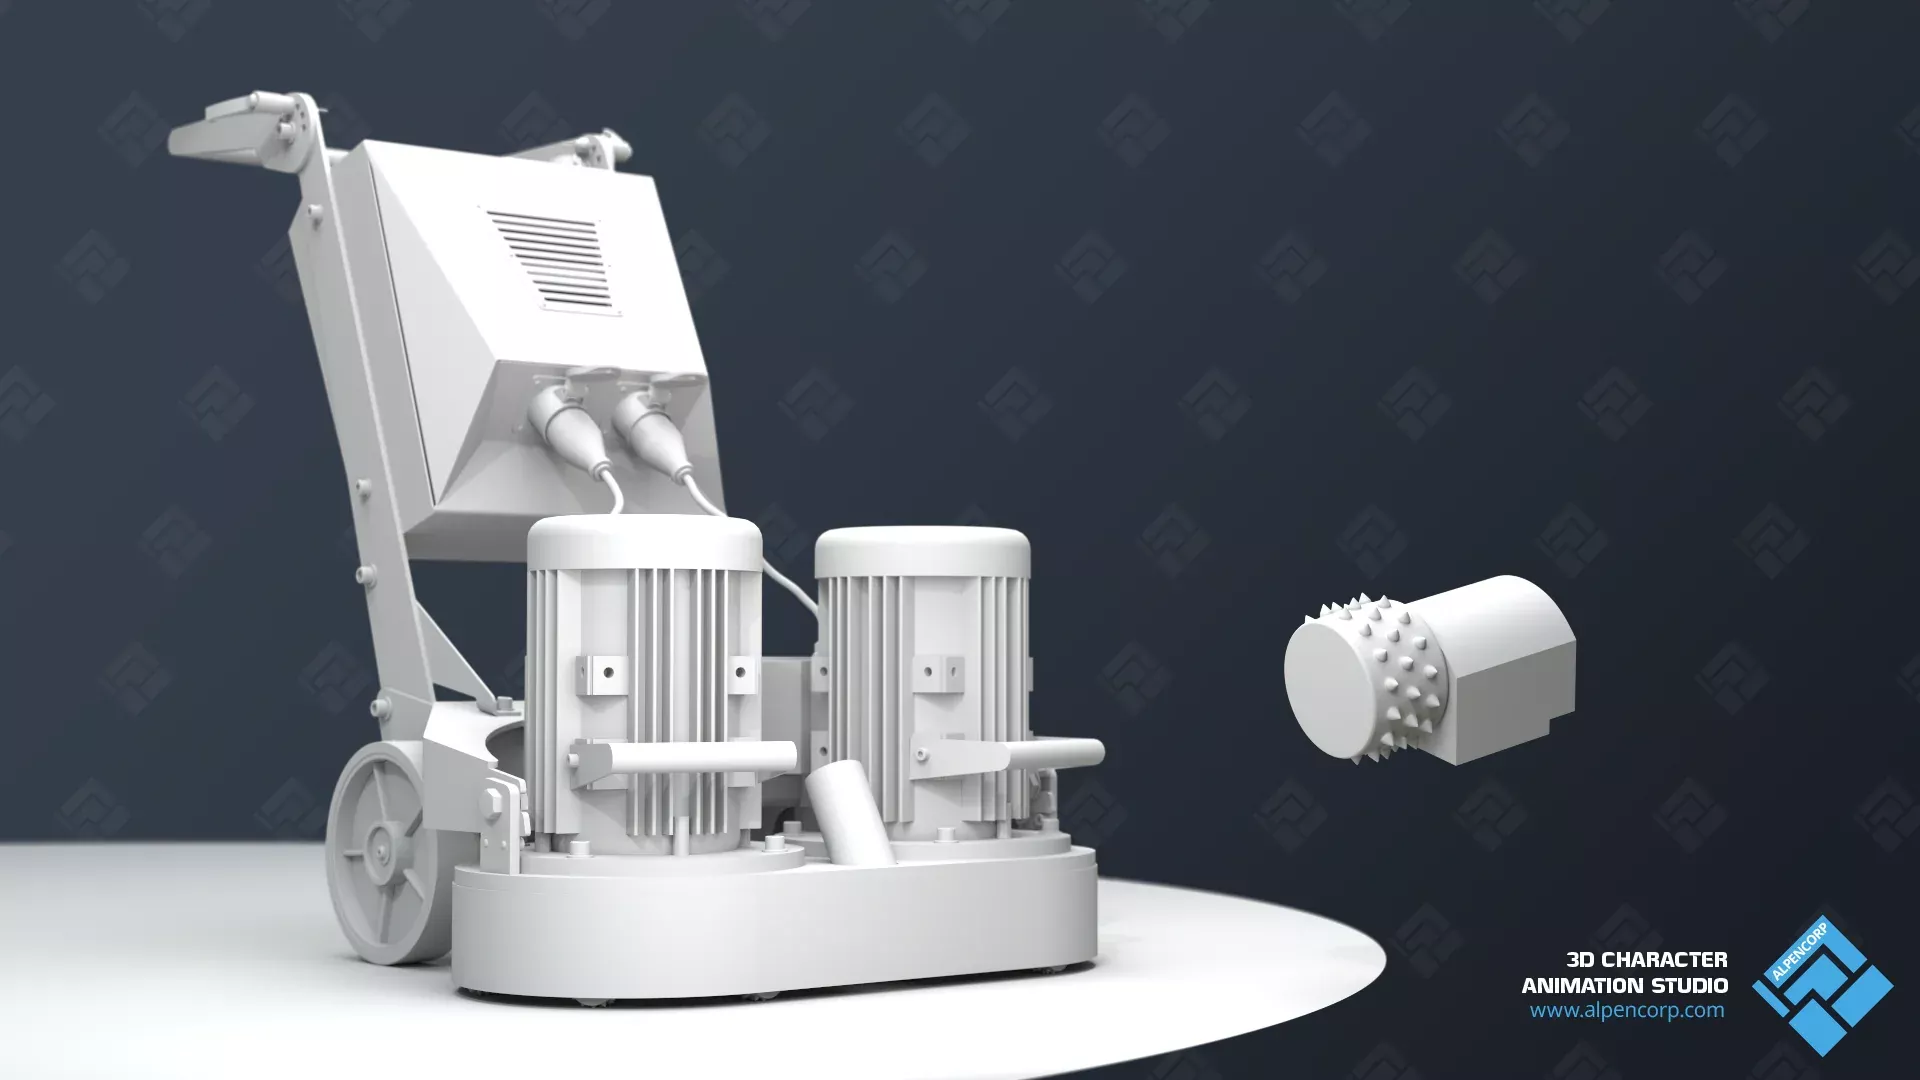 Das fertige CAD 3D-Modell vom Kunden für die industrielle 3D-Animation.